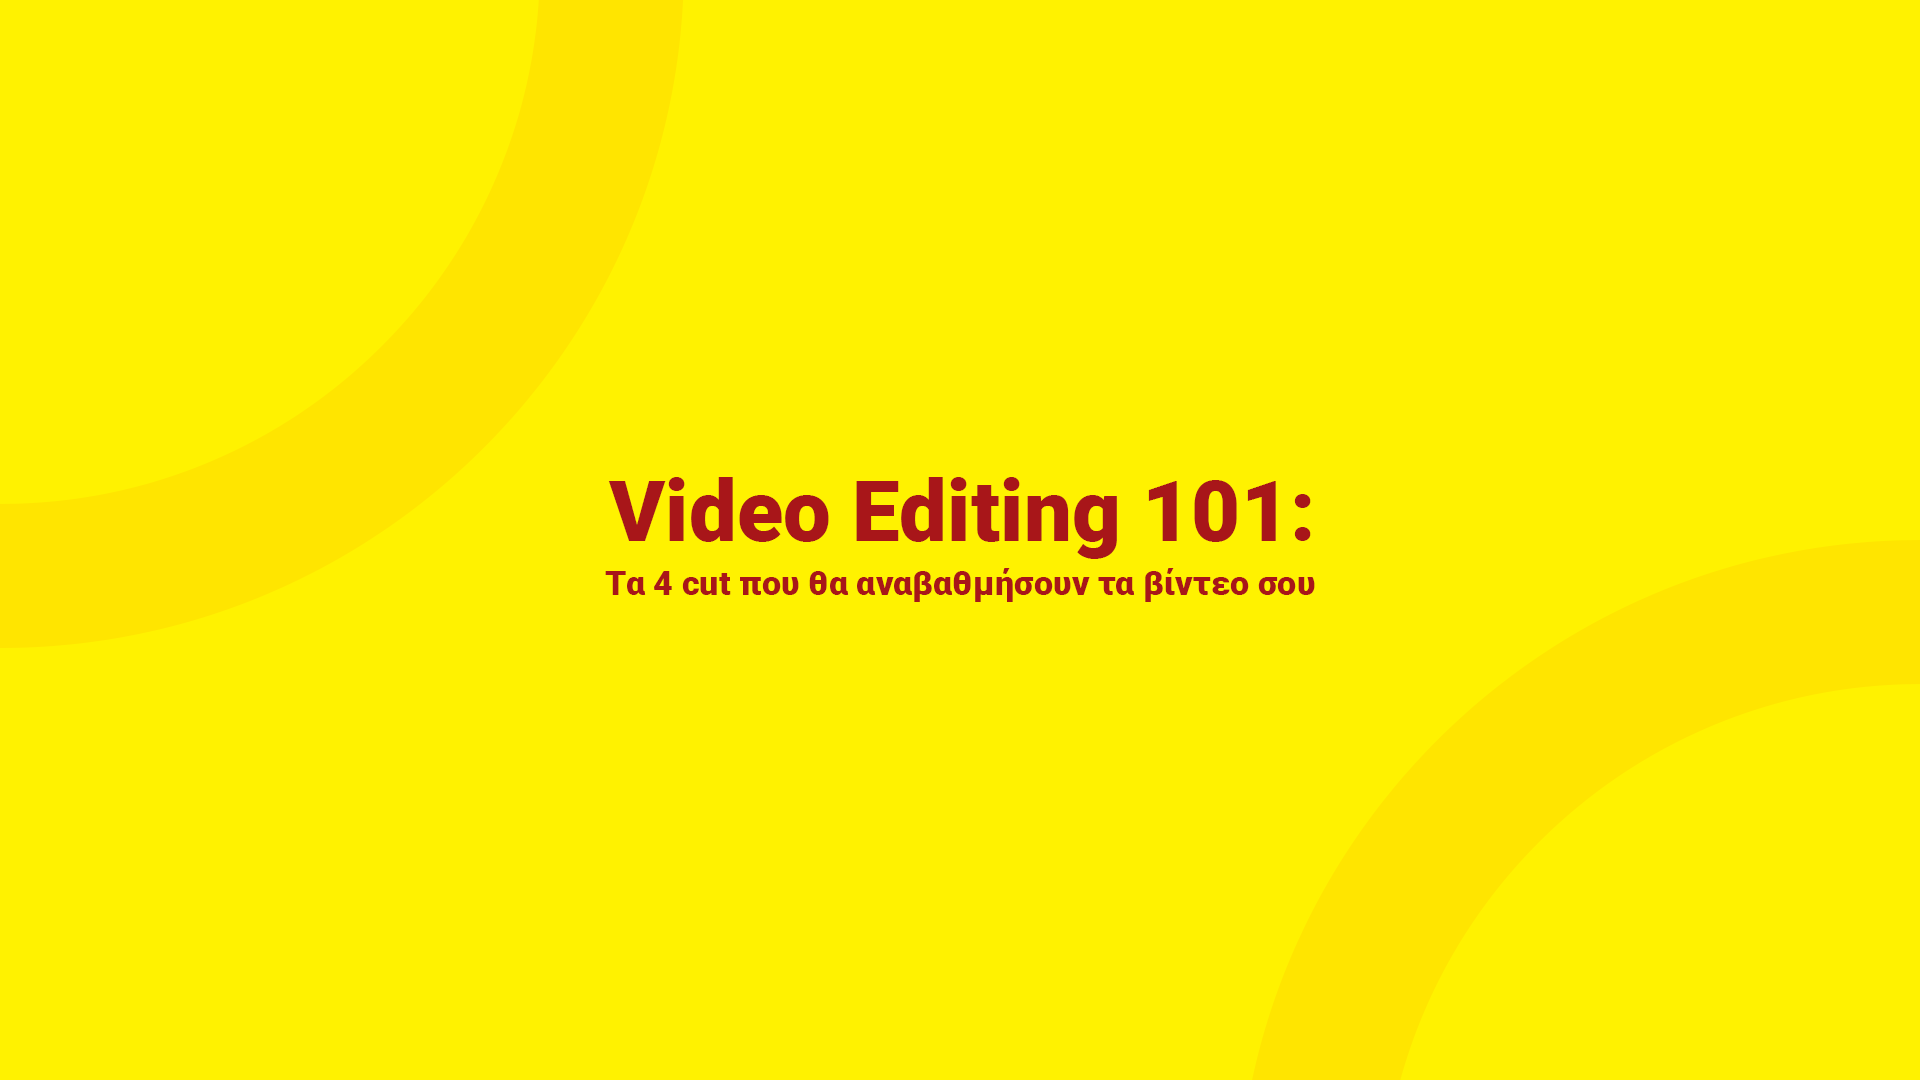 Video Editing 101: Τα 4 cut που θα αναβαθμήσουν τα βίντεο σου